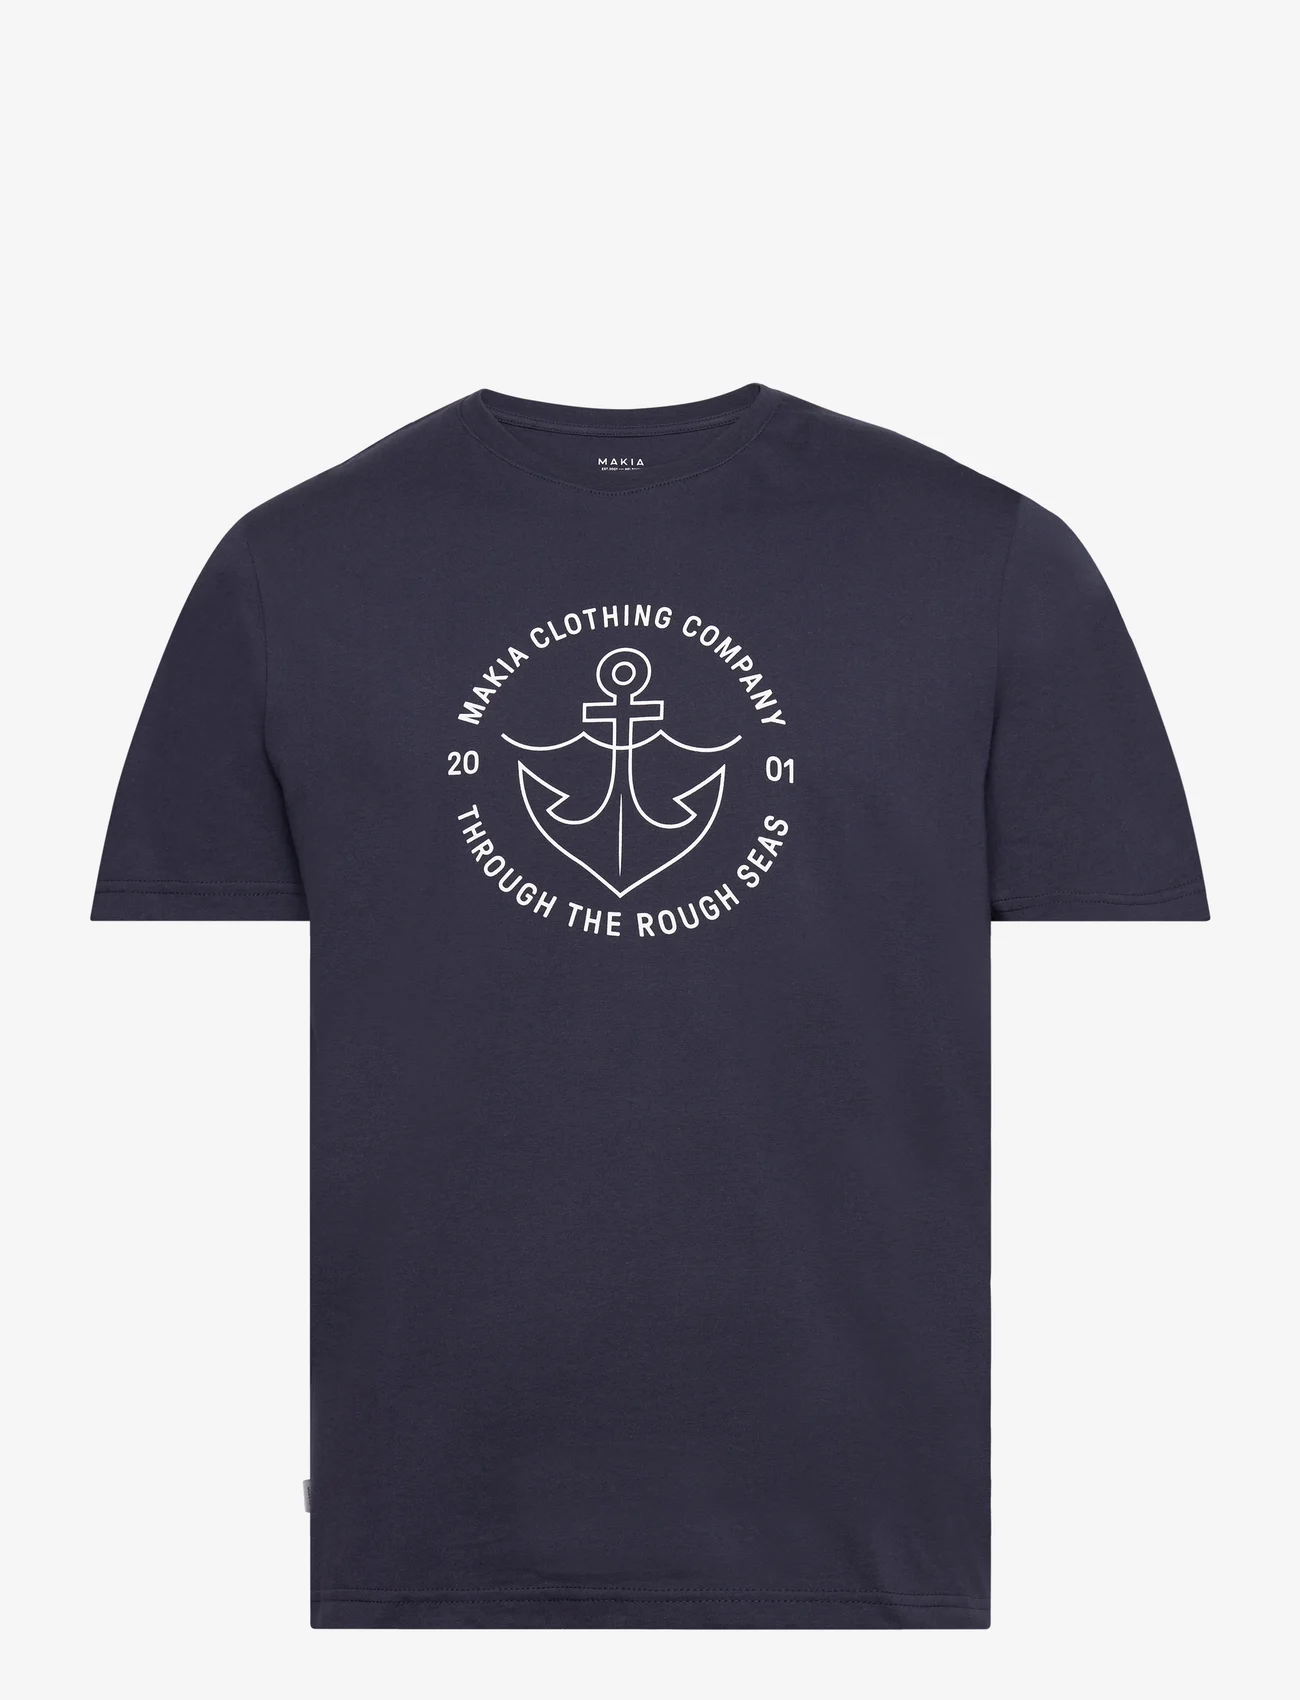 Makia - Hook t-shirt - die niedrigsten preise - dark navy - 0